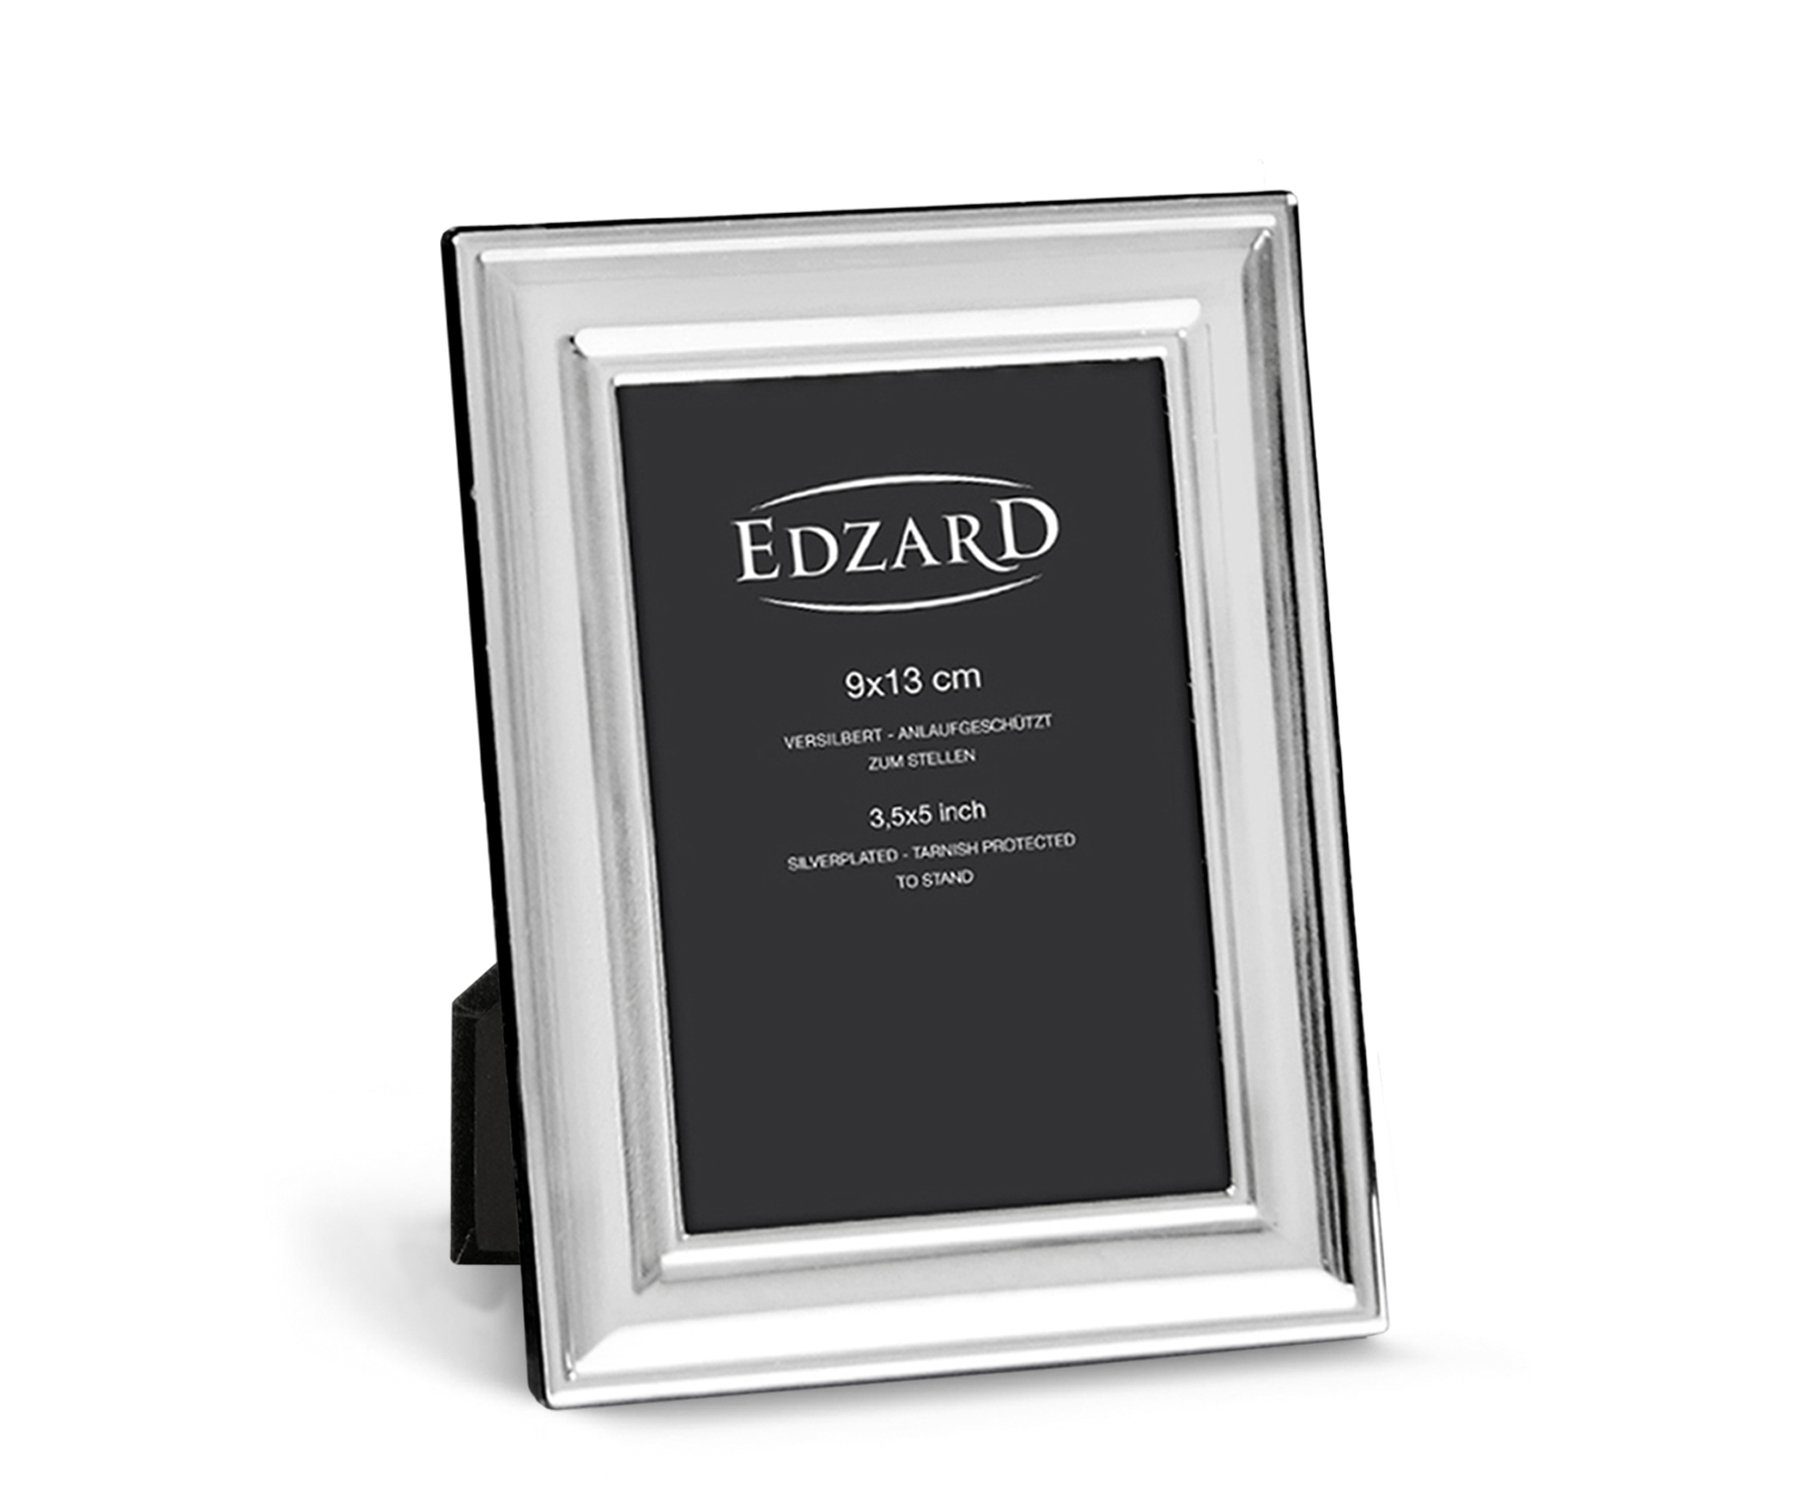 EDZARD Bilderrahmen Sunset, versilbert und anlaufgeschützt, für 9x13 cm Bilder – Fotorahmen